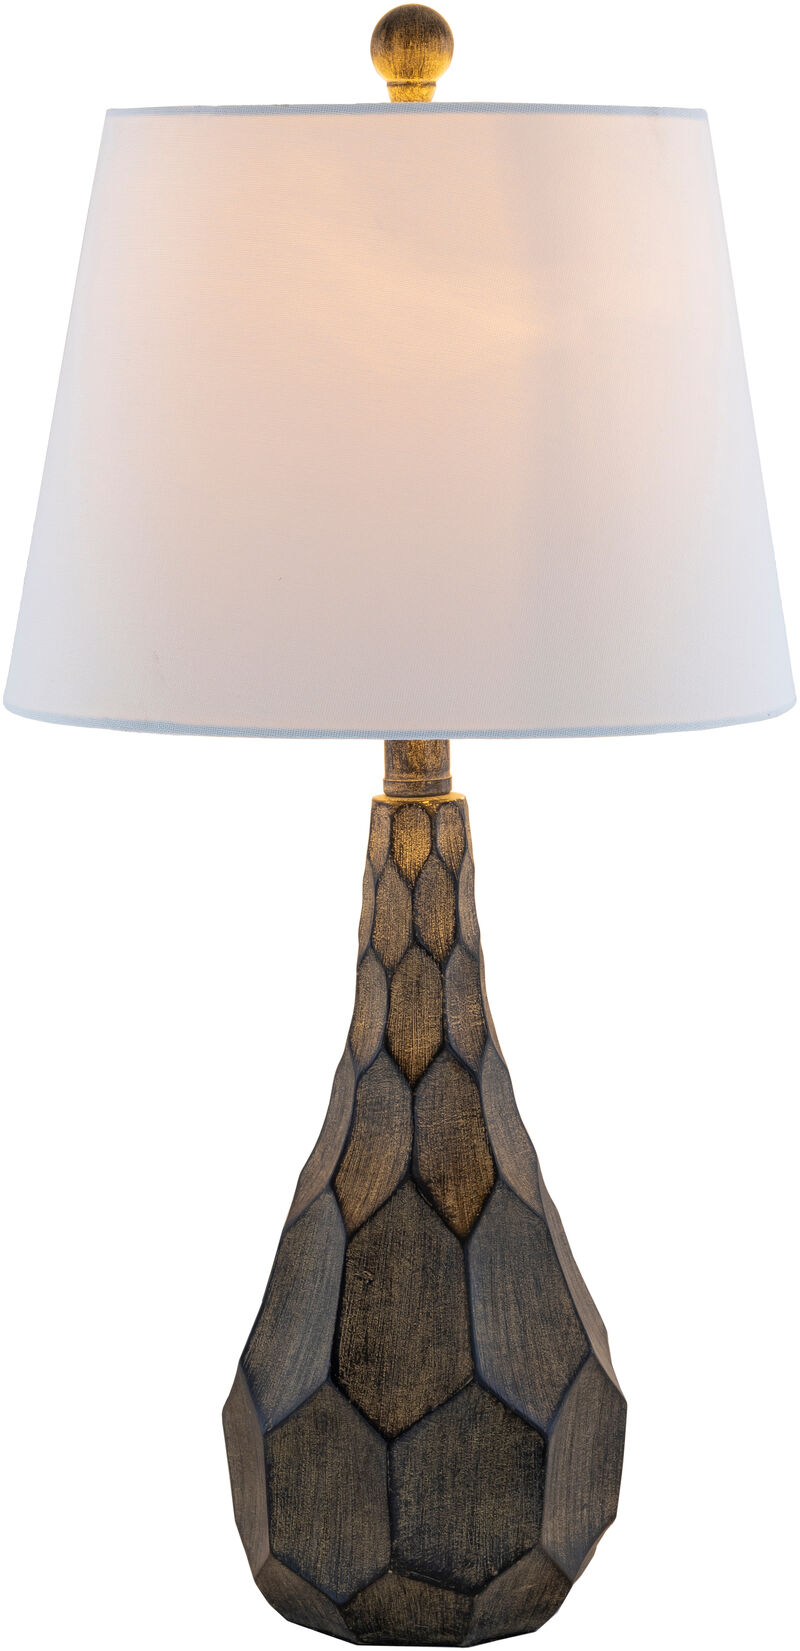 Belinda Lamp